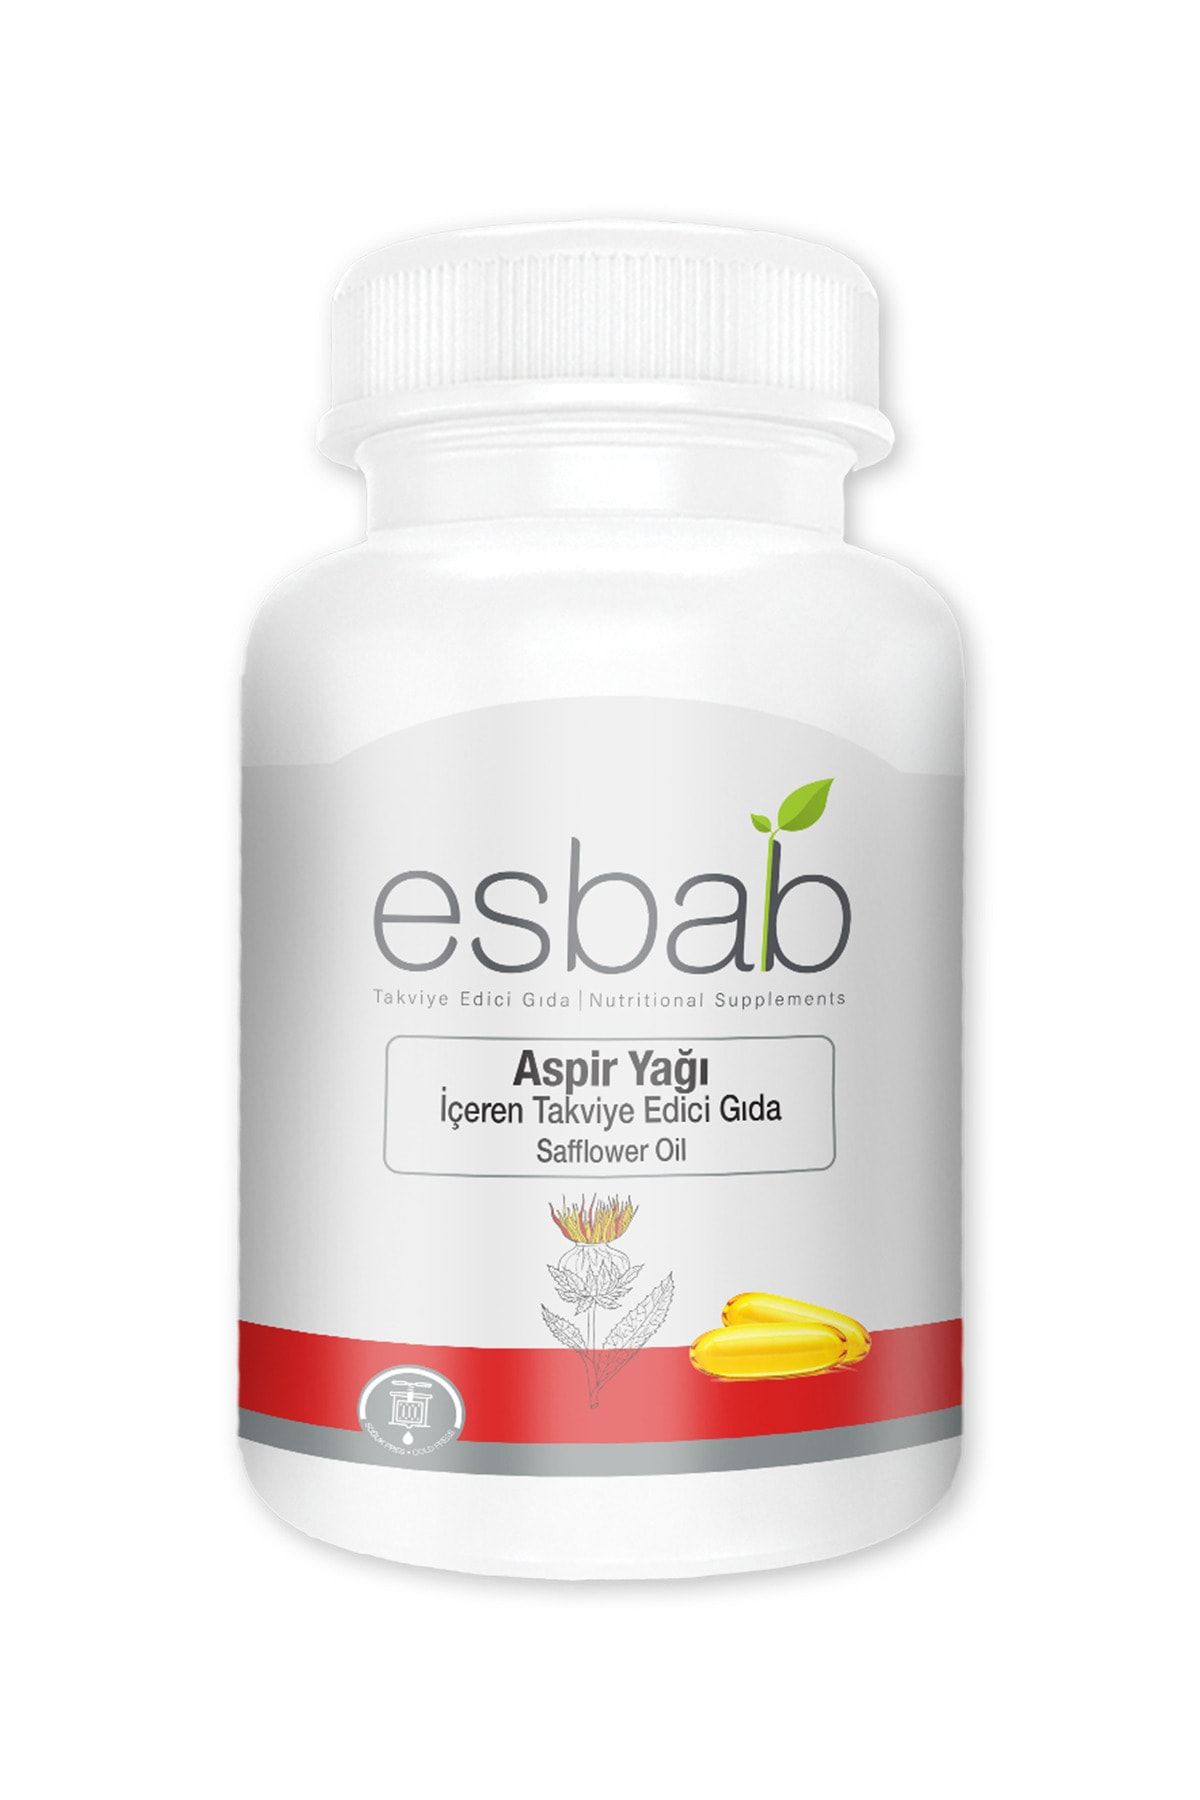 BioBellinda Esbab Aspir Yağı Kapsül Takviye Edici Gıda 60 Kapsül Soğuk Sıkım